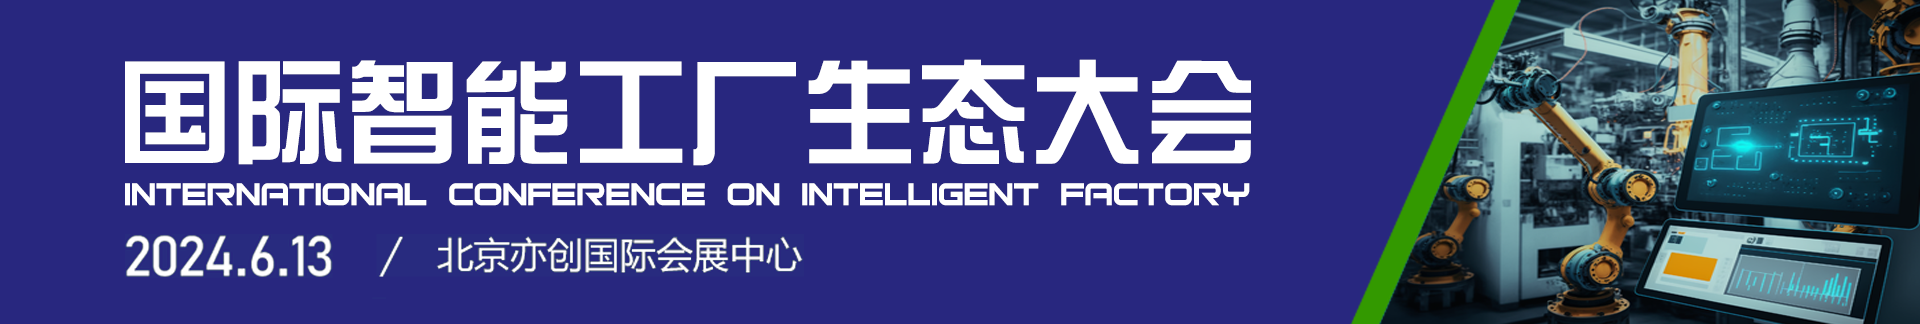 国际智能工厂大会